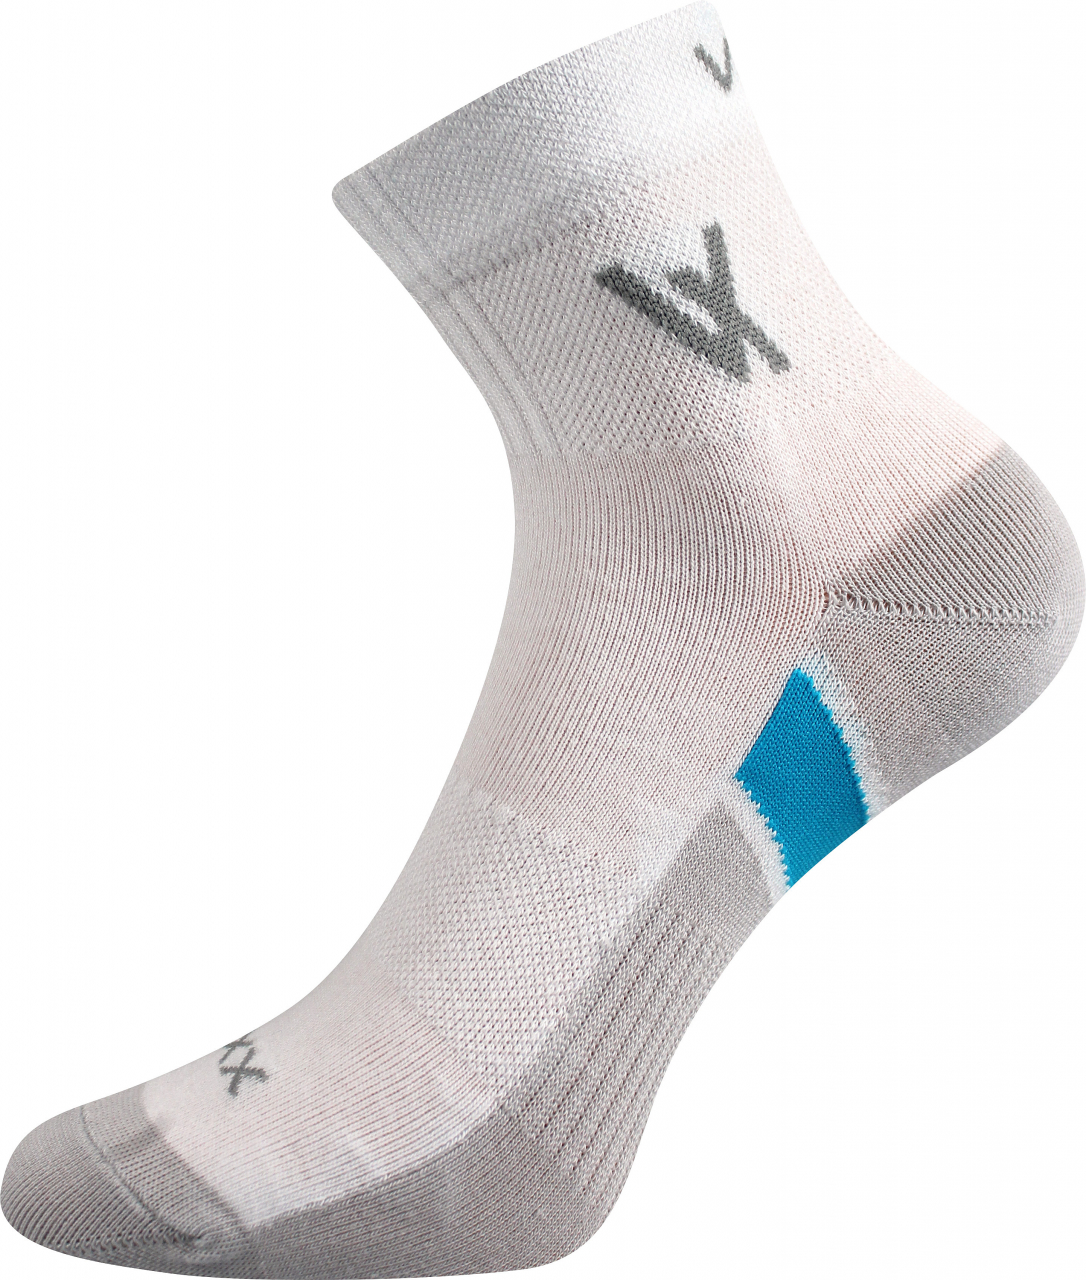 Ponožky sportovní Voxx Neo - bílé, 43-46